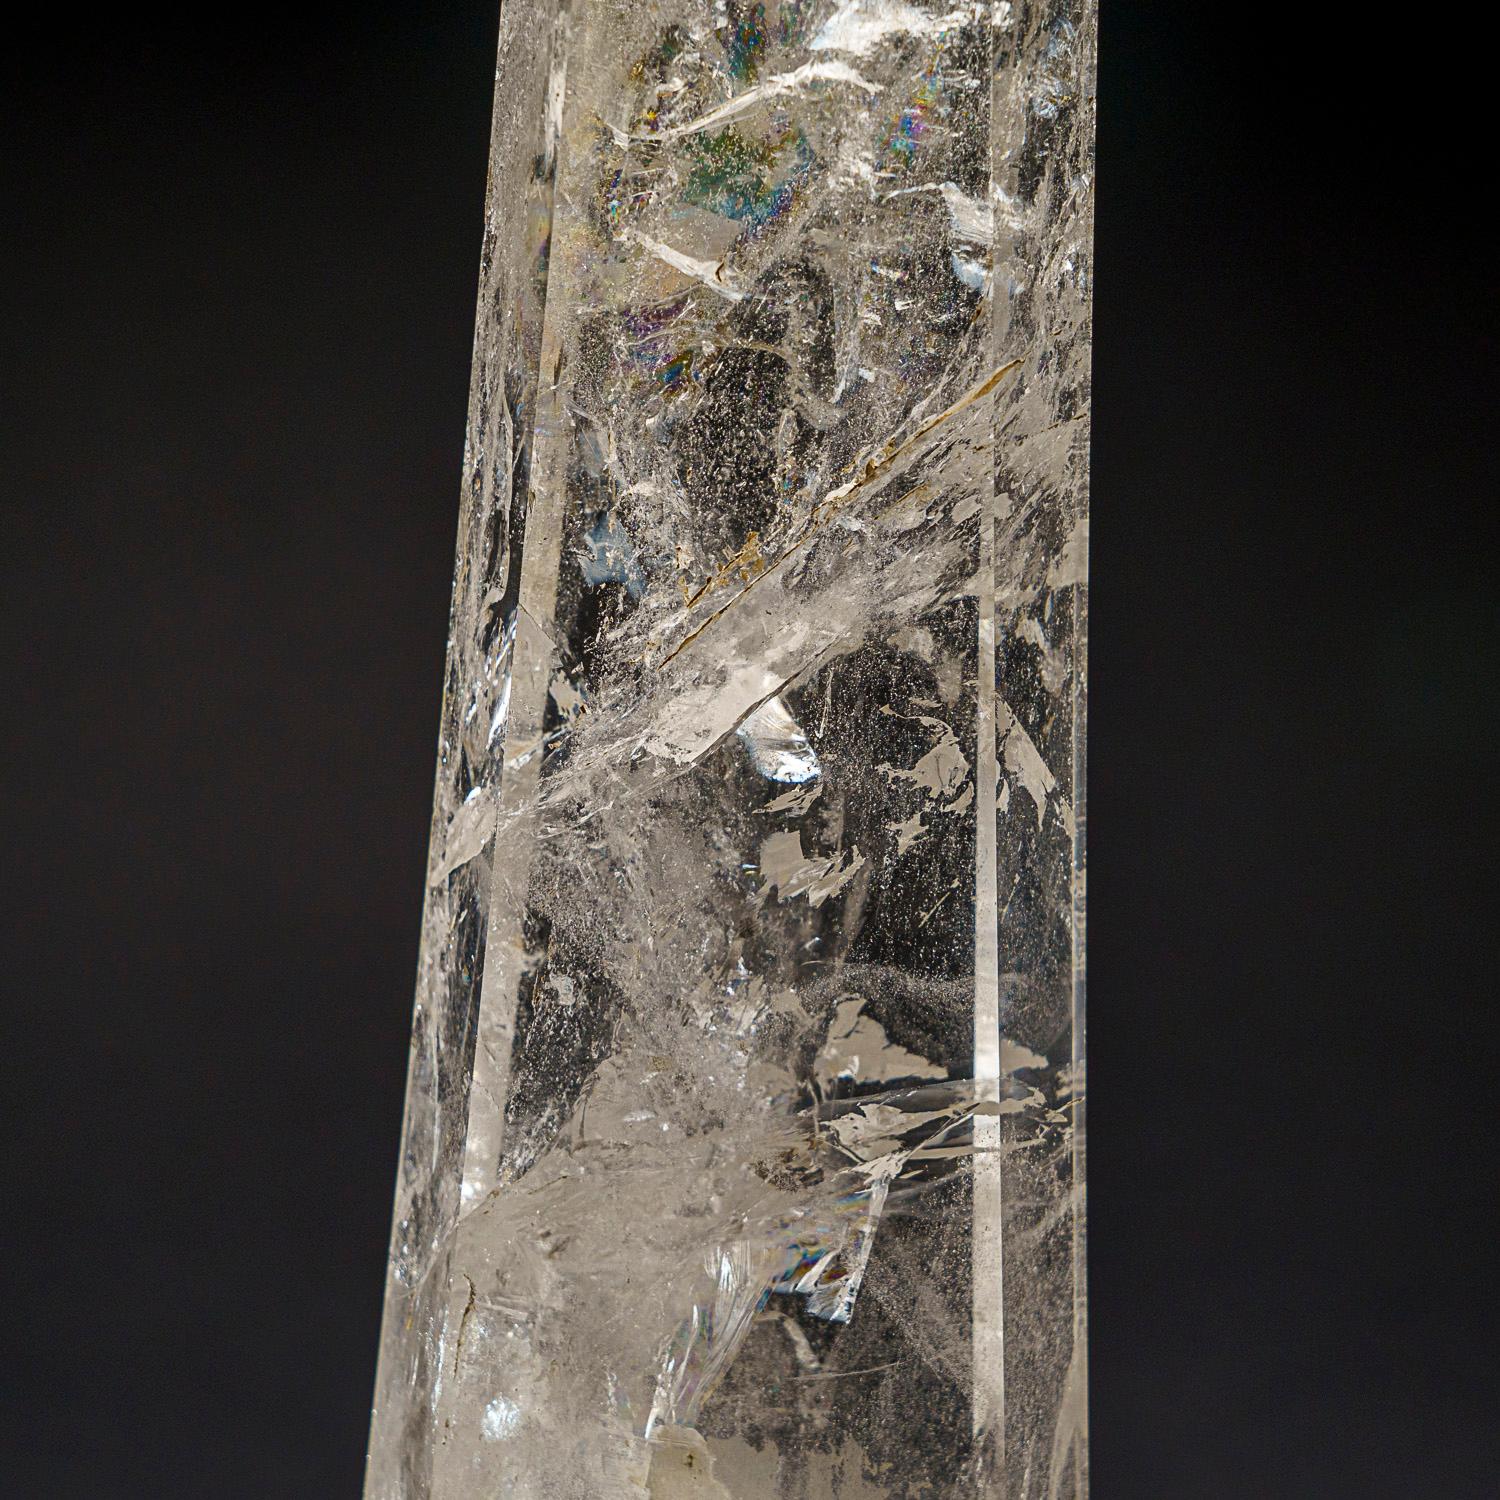 Dieser brasilianische, klare Quarzkristall ist von höchster Museumsqualität, mit einer polierten Spiegeloberfläche auf allen Seiten. Er ist als 